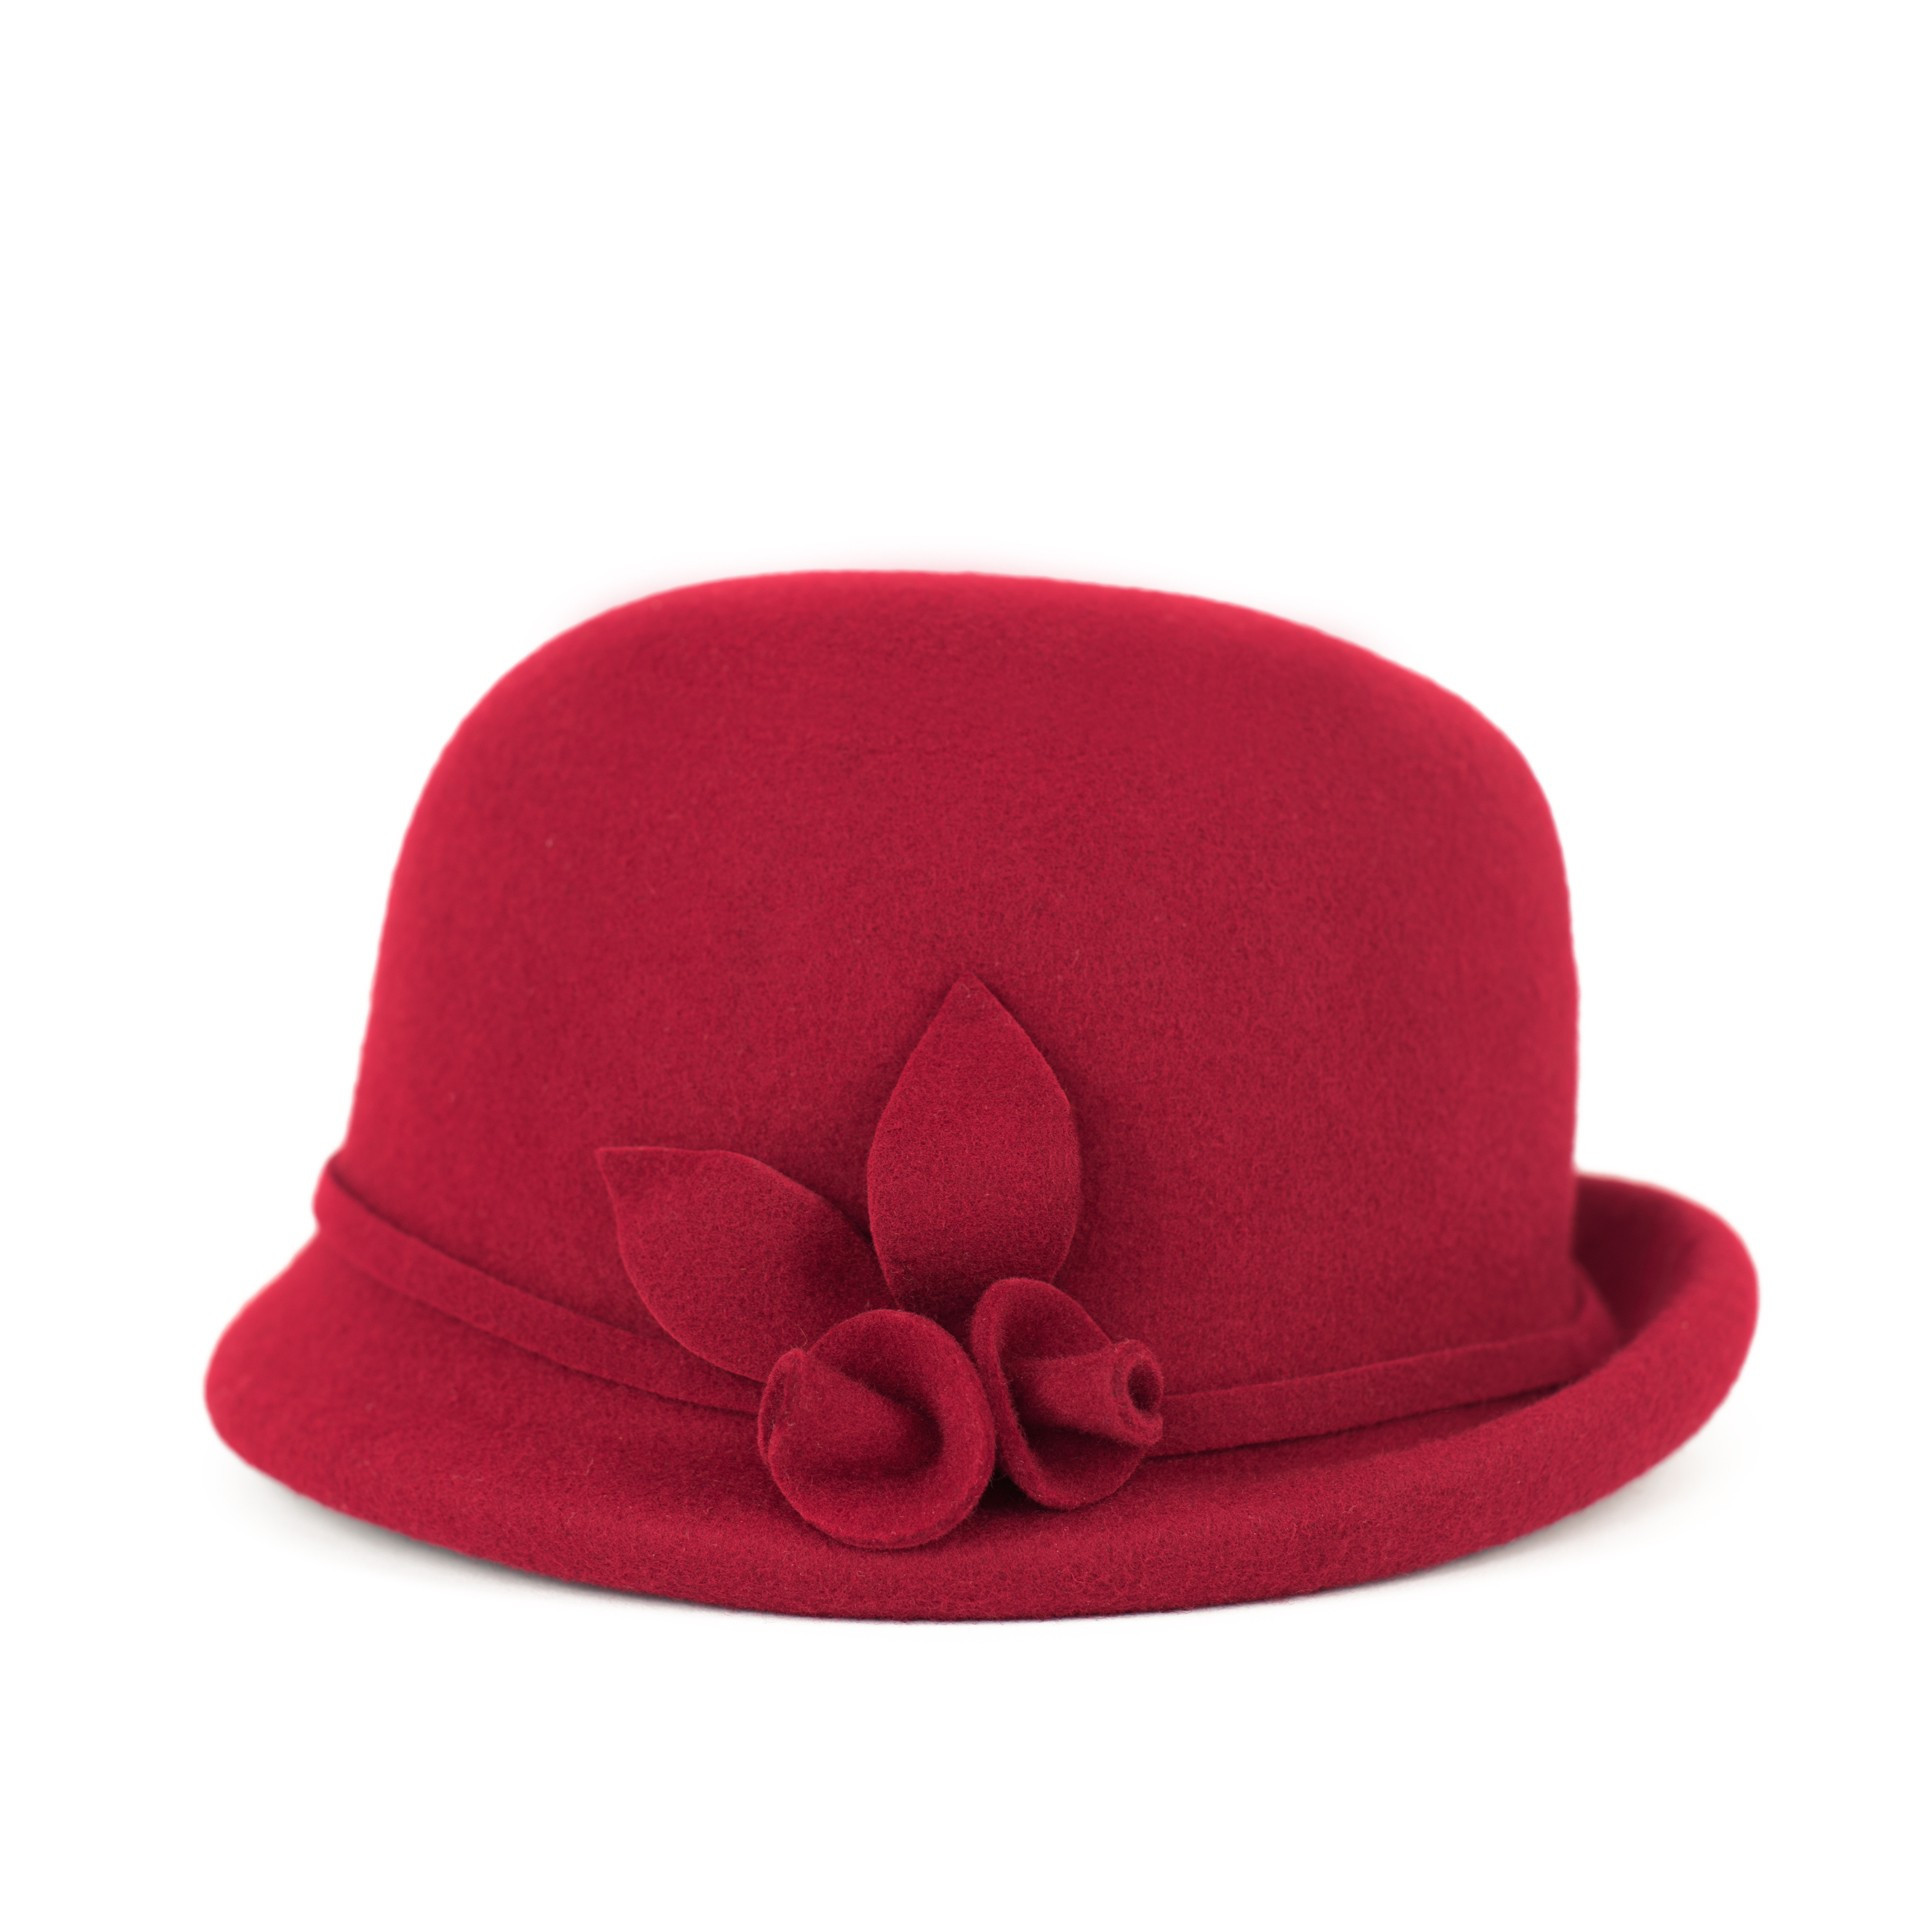 Dámsky klobúk sk21816 tm. červená - Art of polo OS